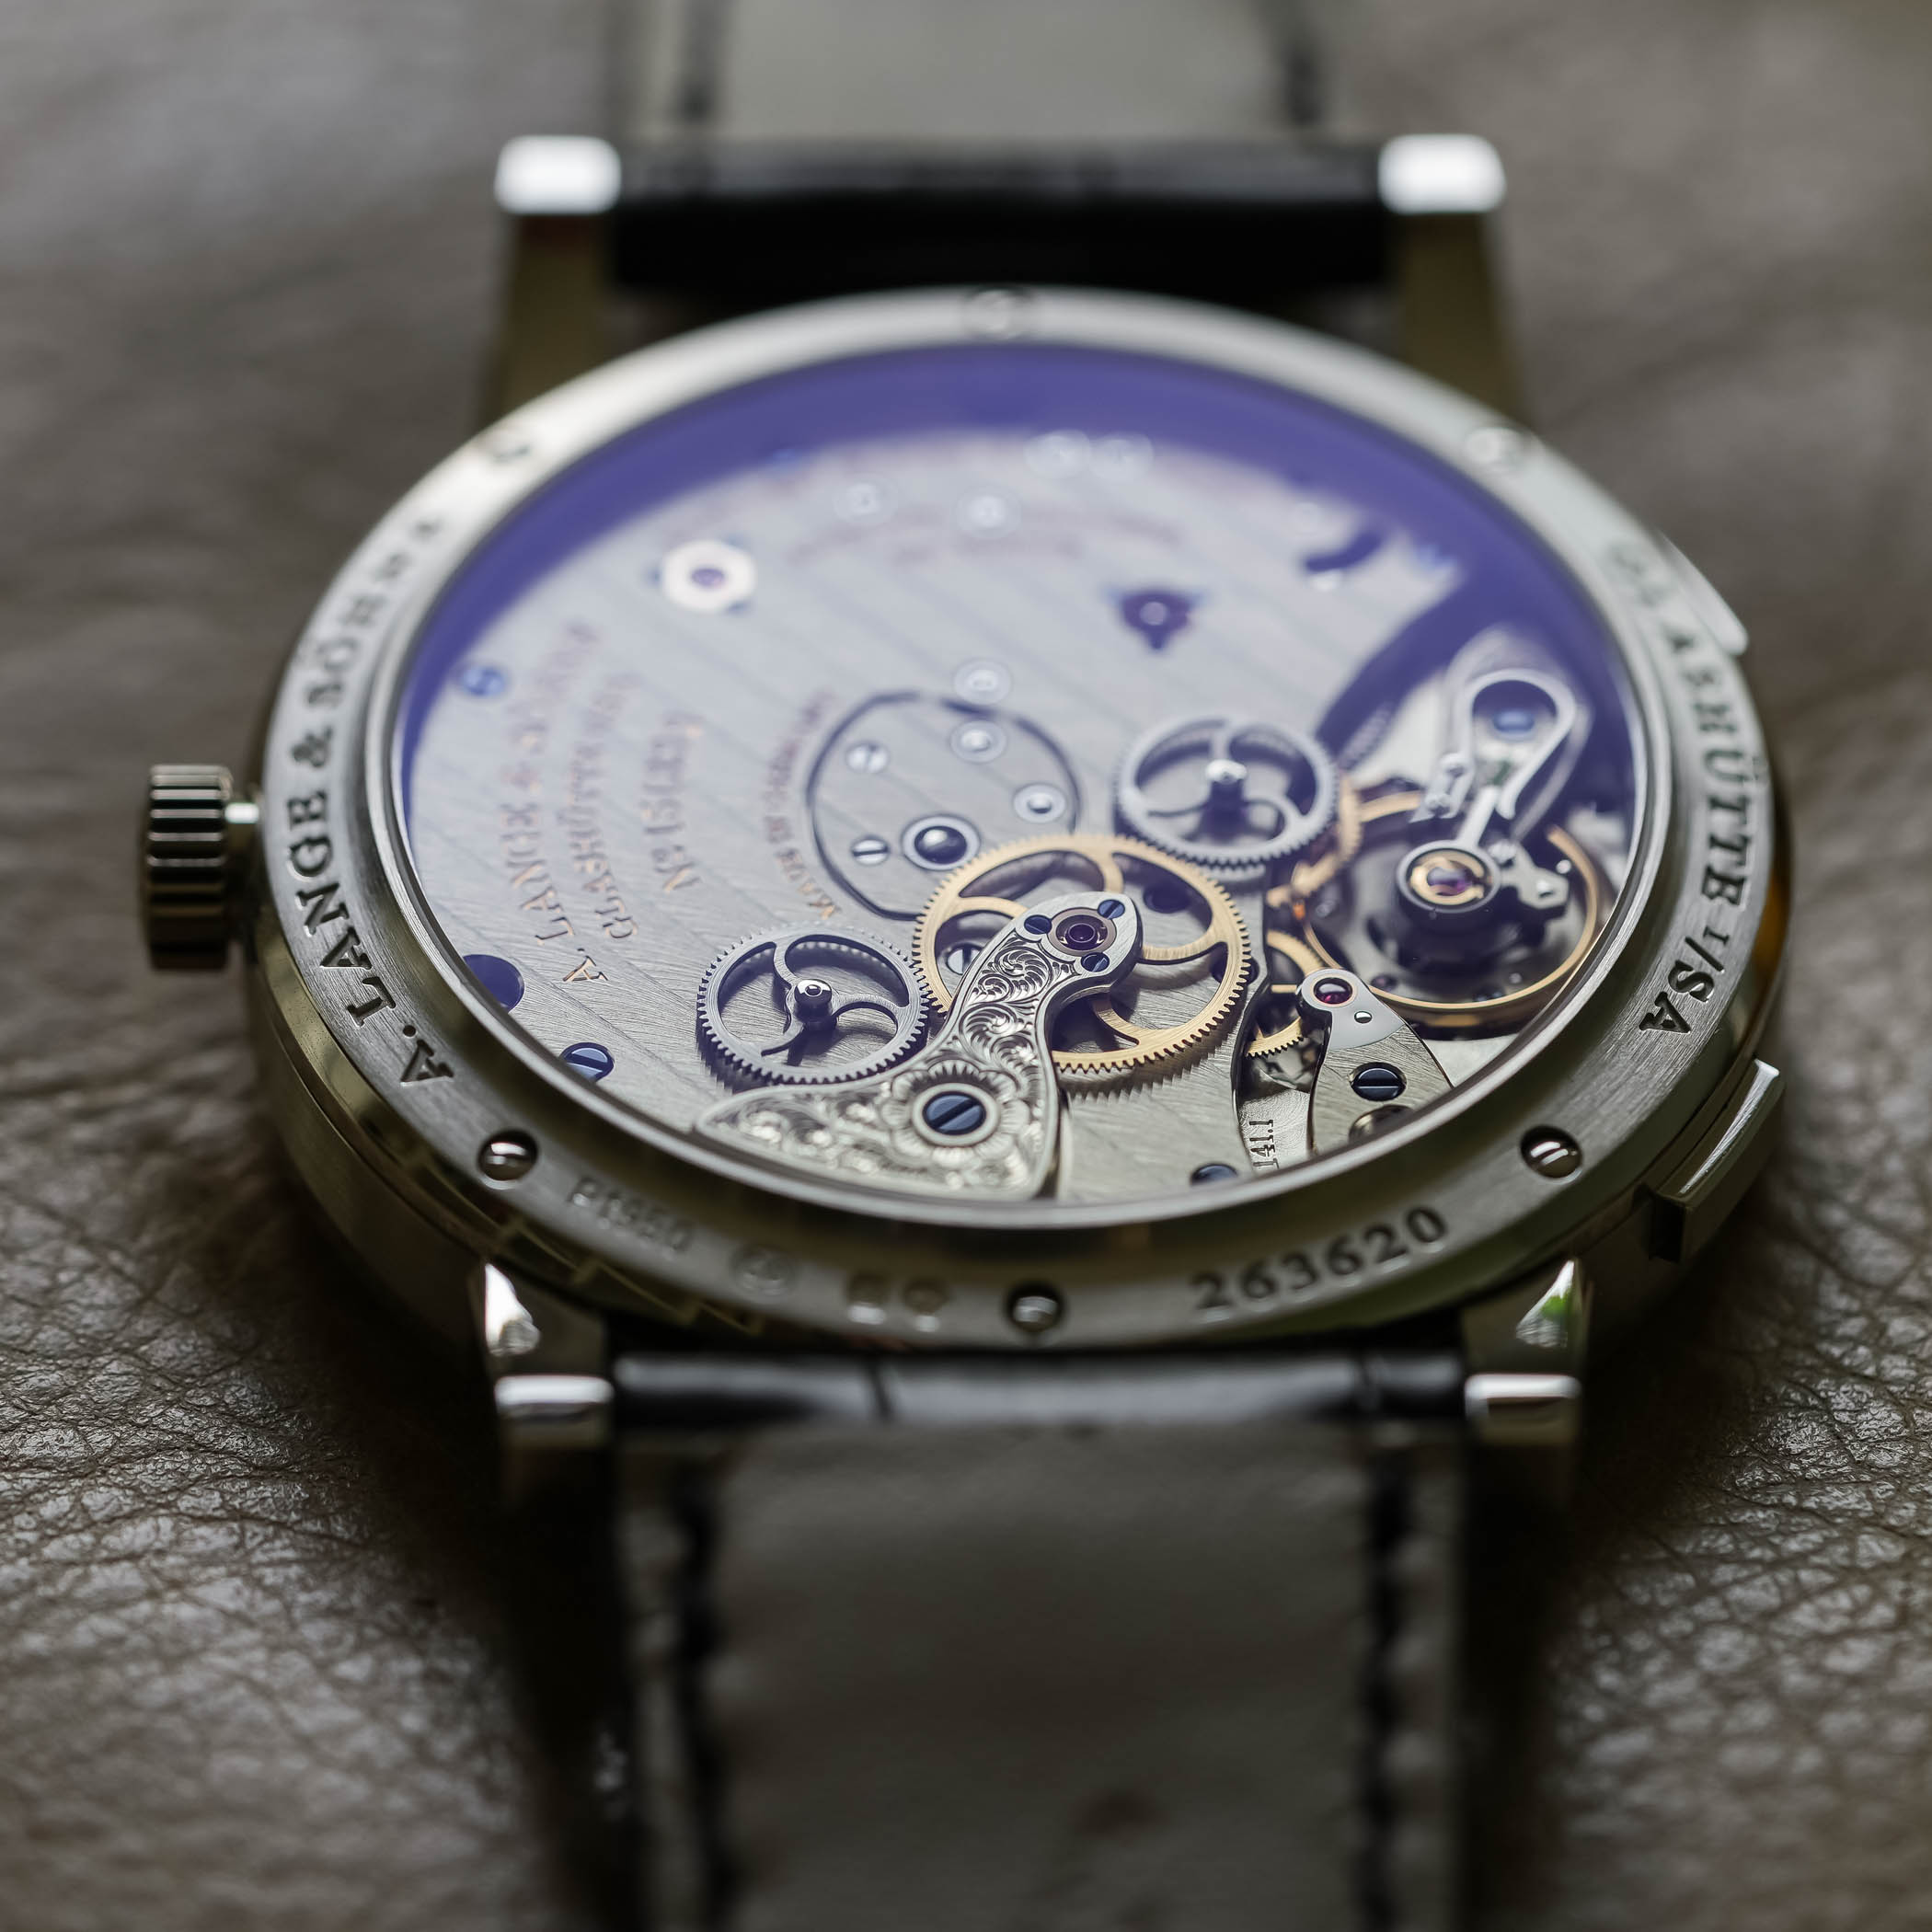 Jean Arnault, scion of LVMH, on watchmaking's Gen Z appeal